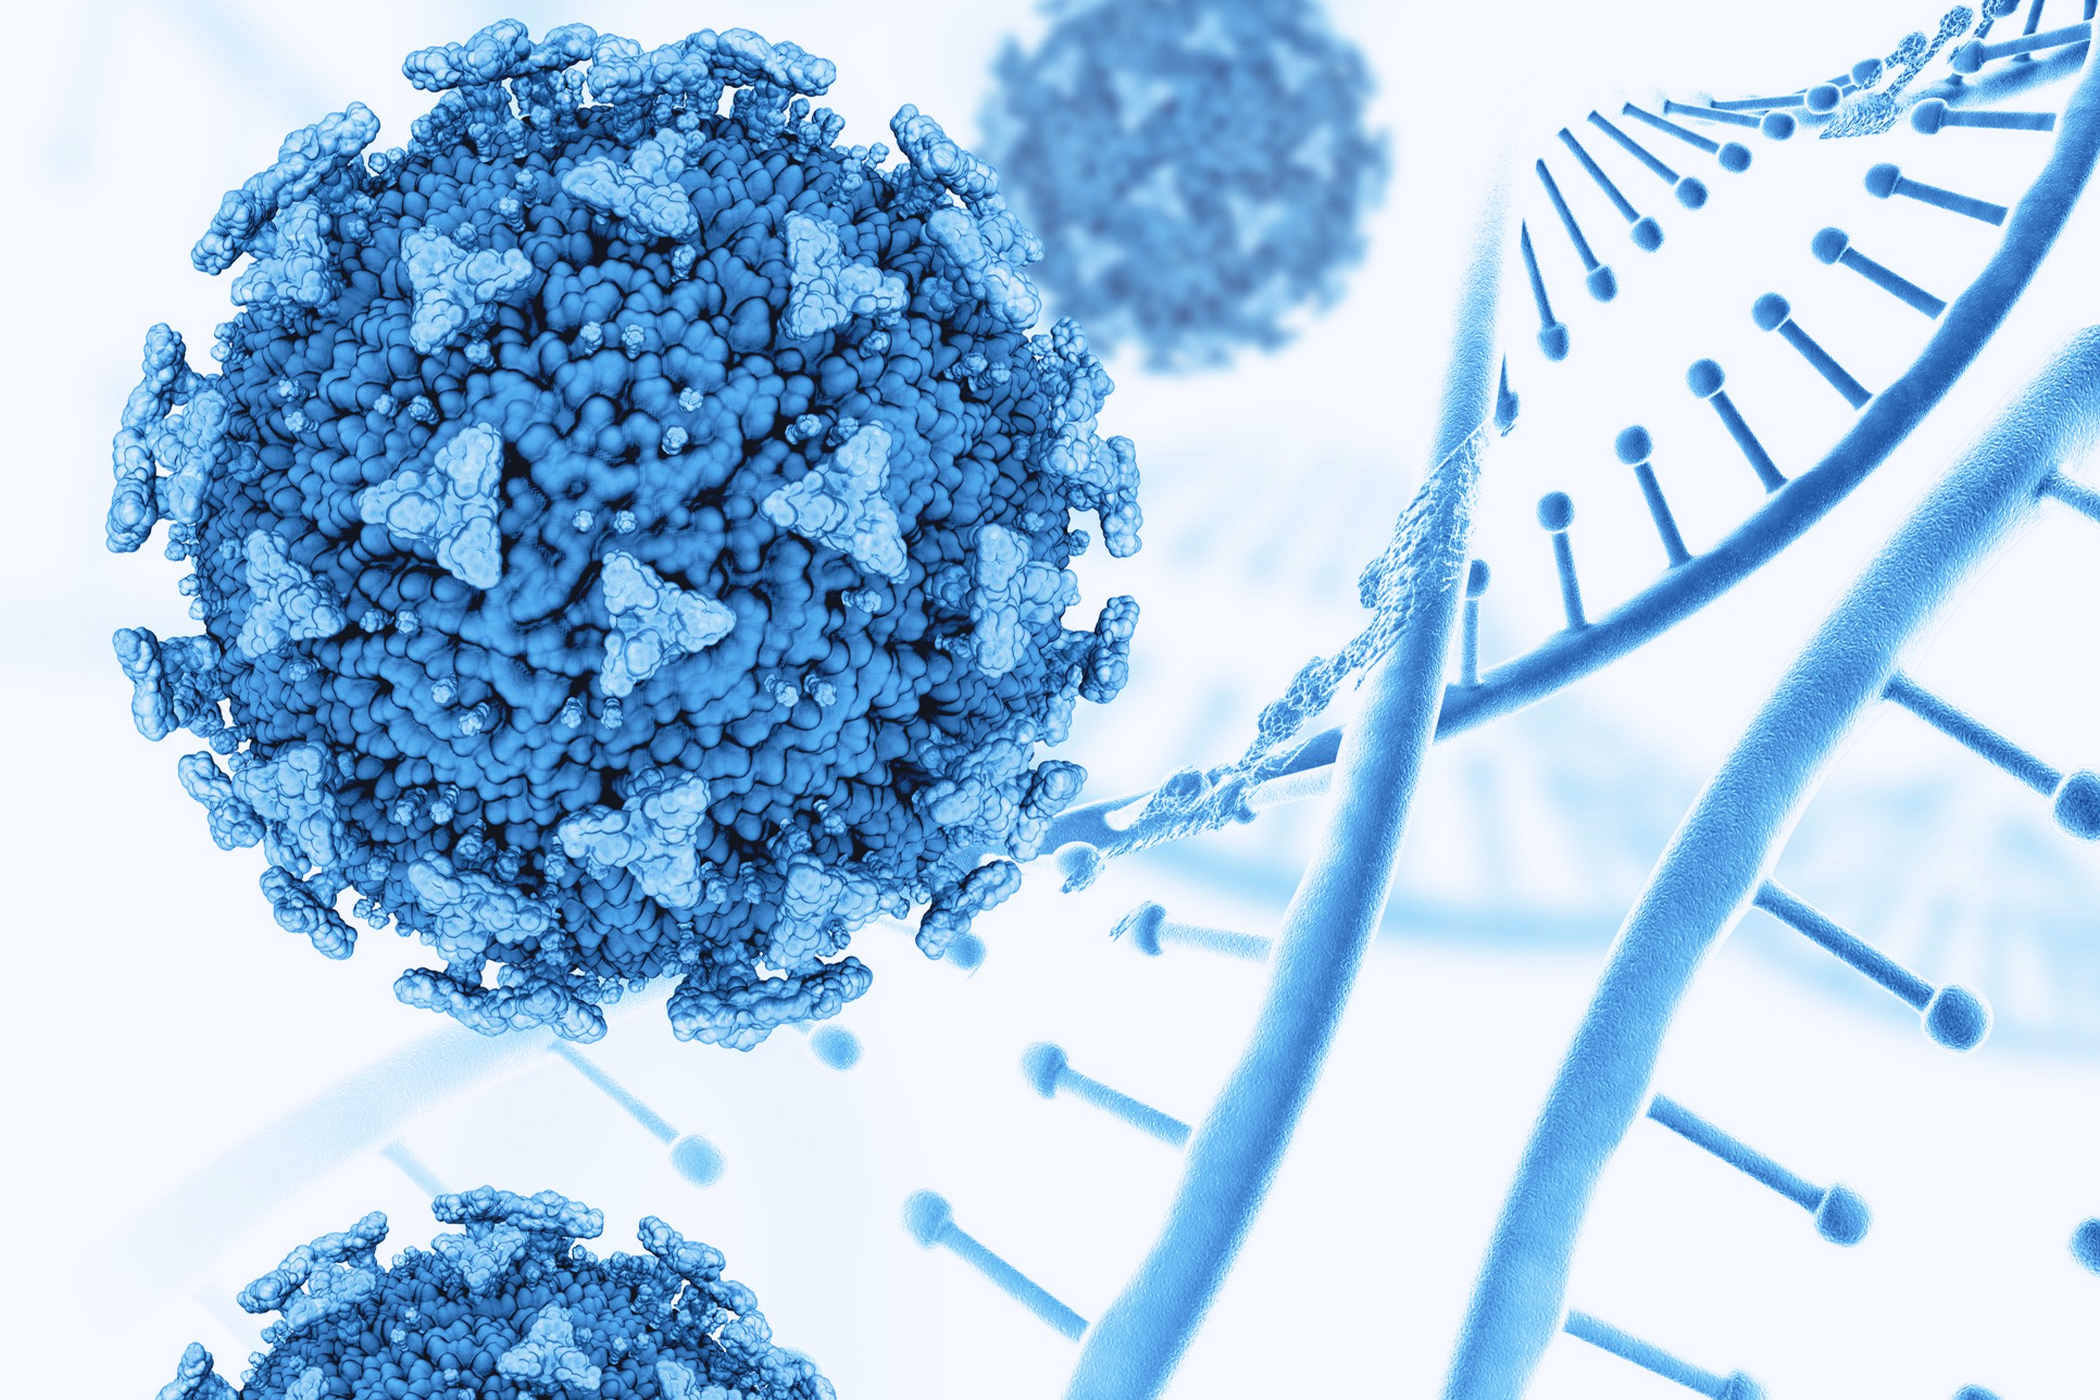 ที-เซลล์ ดัดแปลงสามารถหลั่งโมเลกุลแอนติบอดีสายสั้นที่มีความจำเพาะต่อแอนติเจน CD133 บนเซลล์มะเร็ง